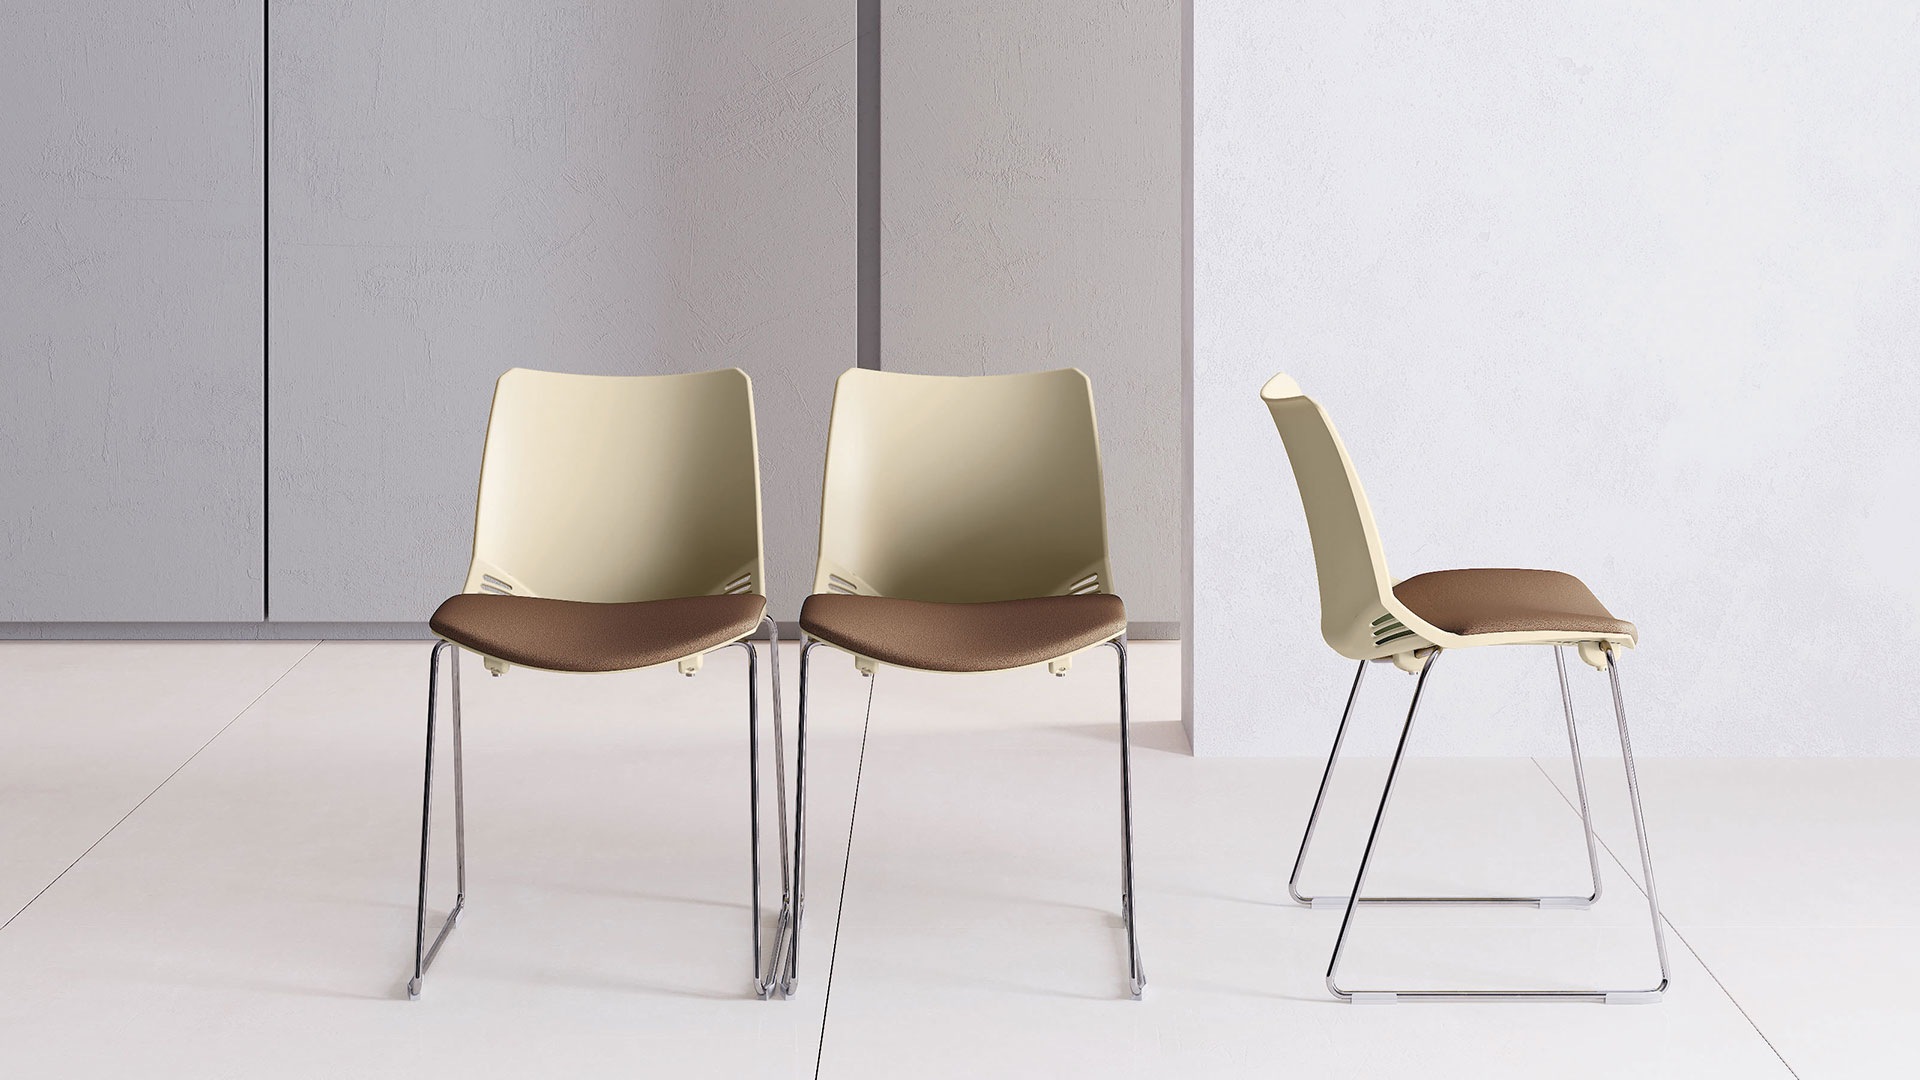 Визуально хрупкие полозья обеспечивают стульям устойчивость и практичность 